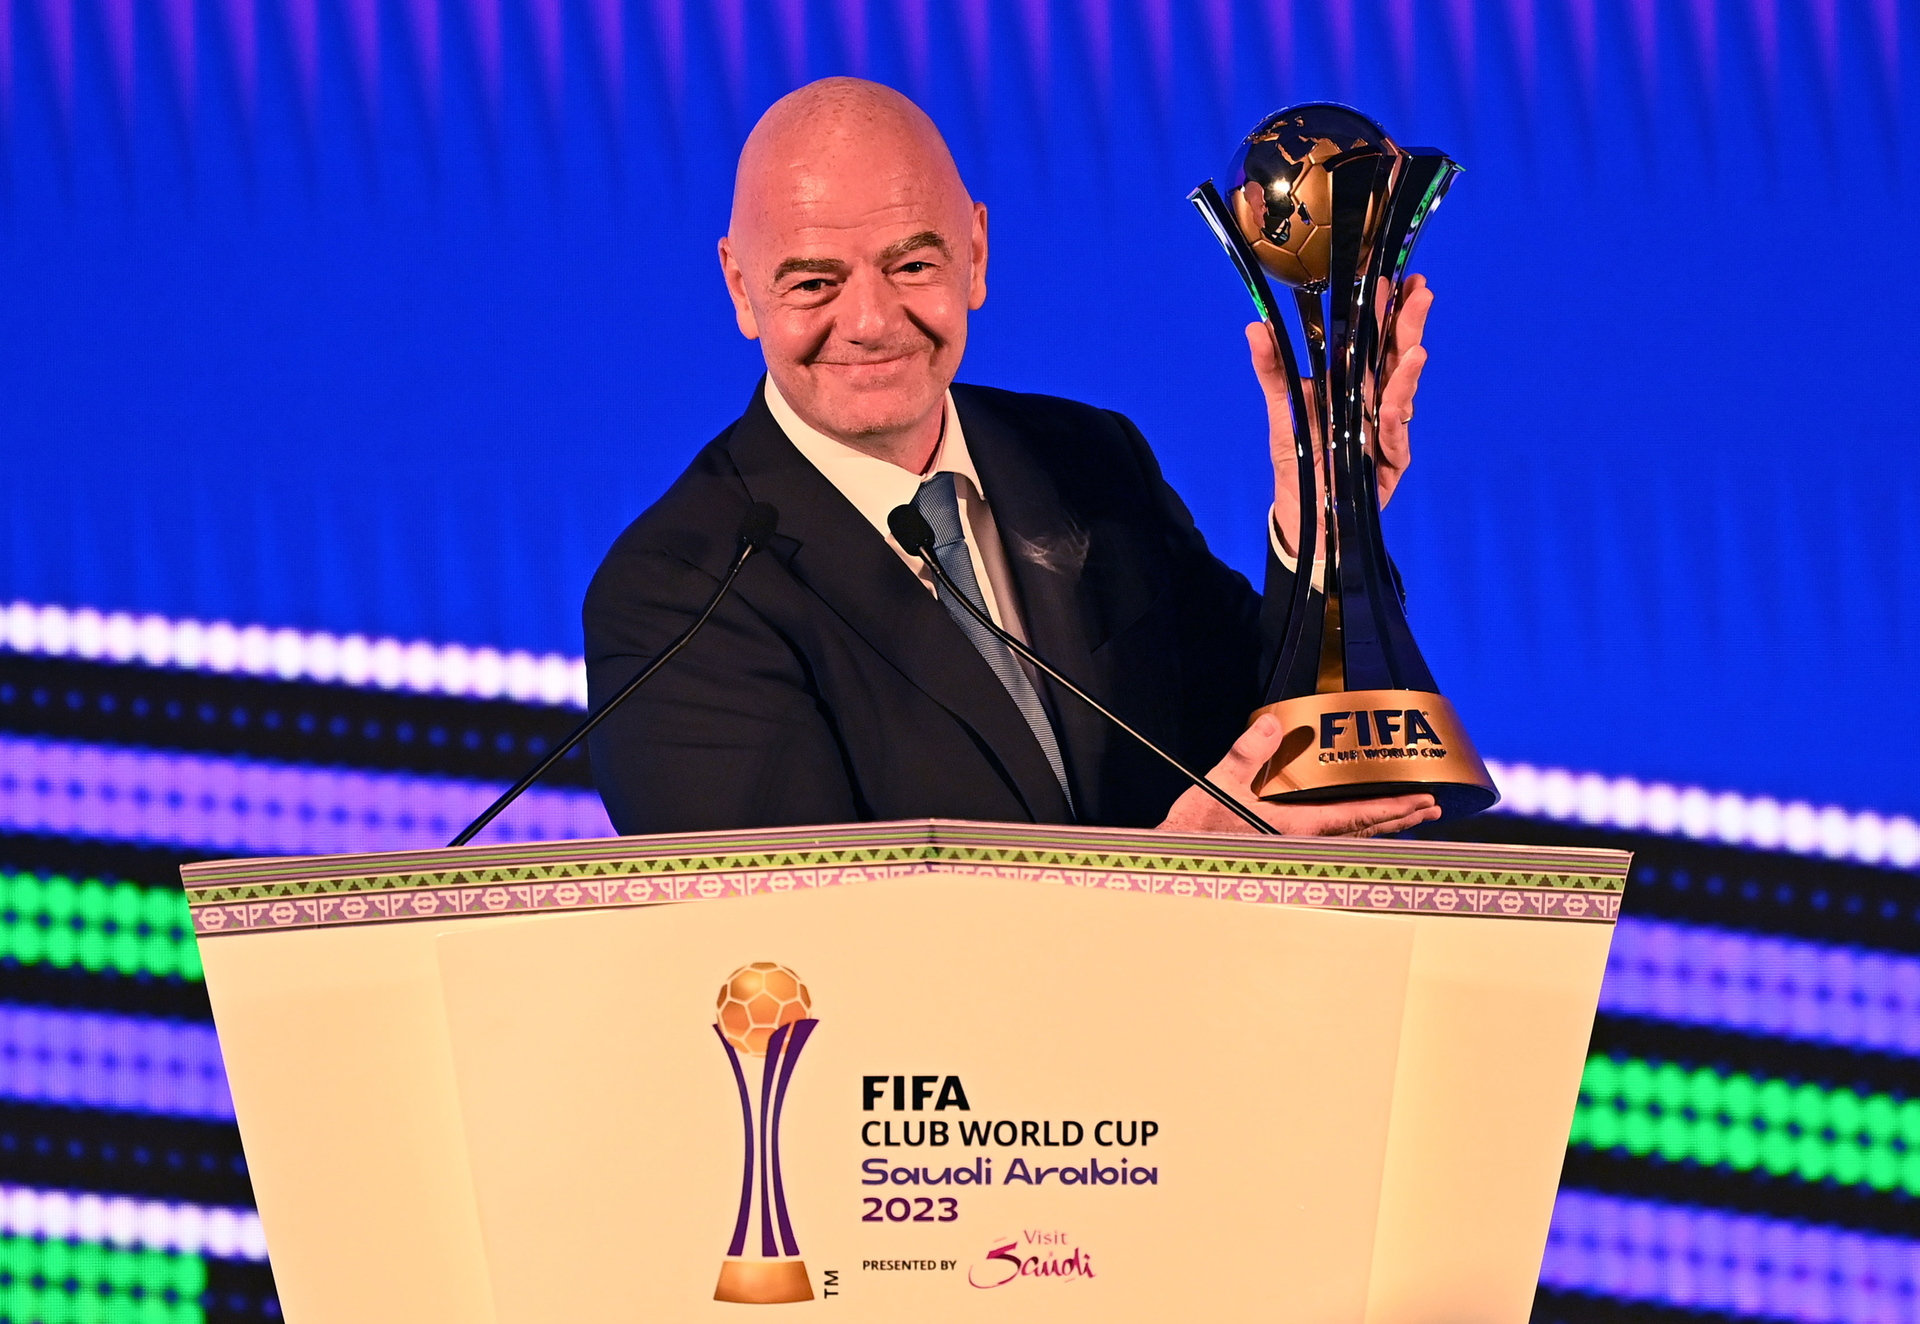 FIFA confirma que el Mundial de 2034 se jugará en Arabia Saudita